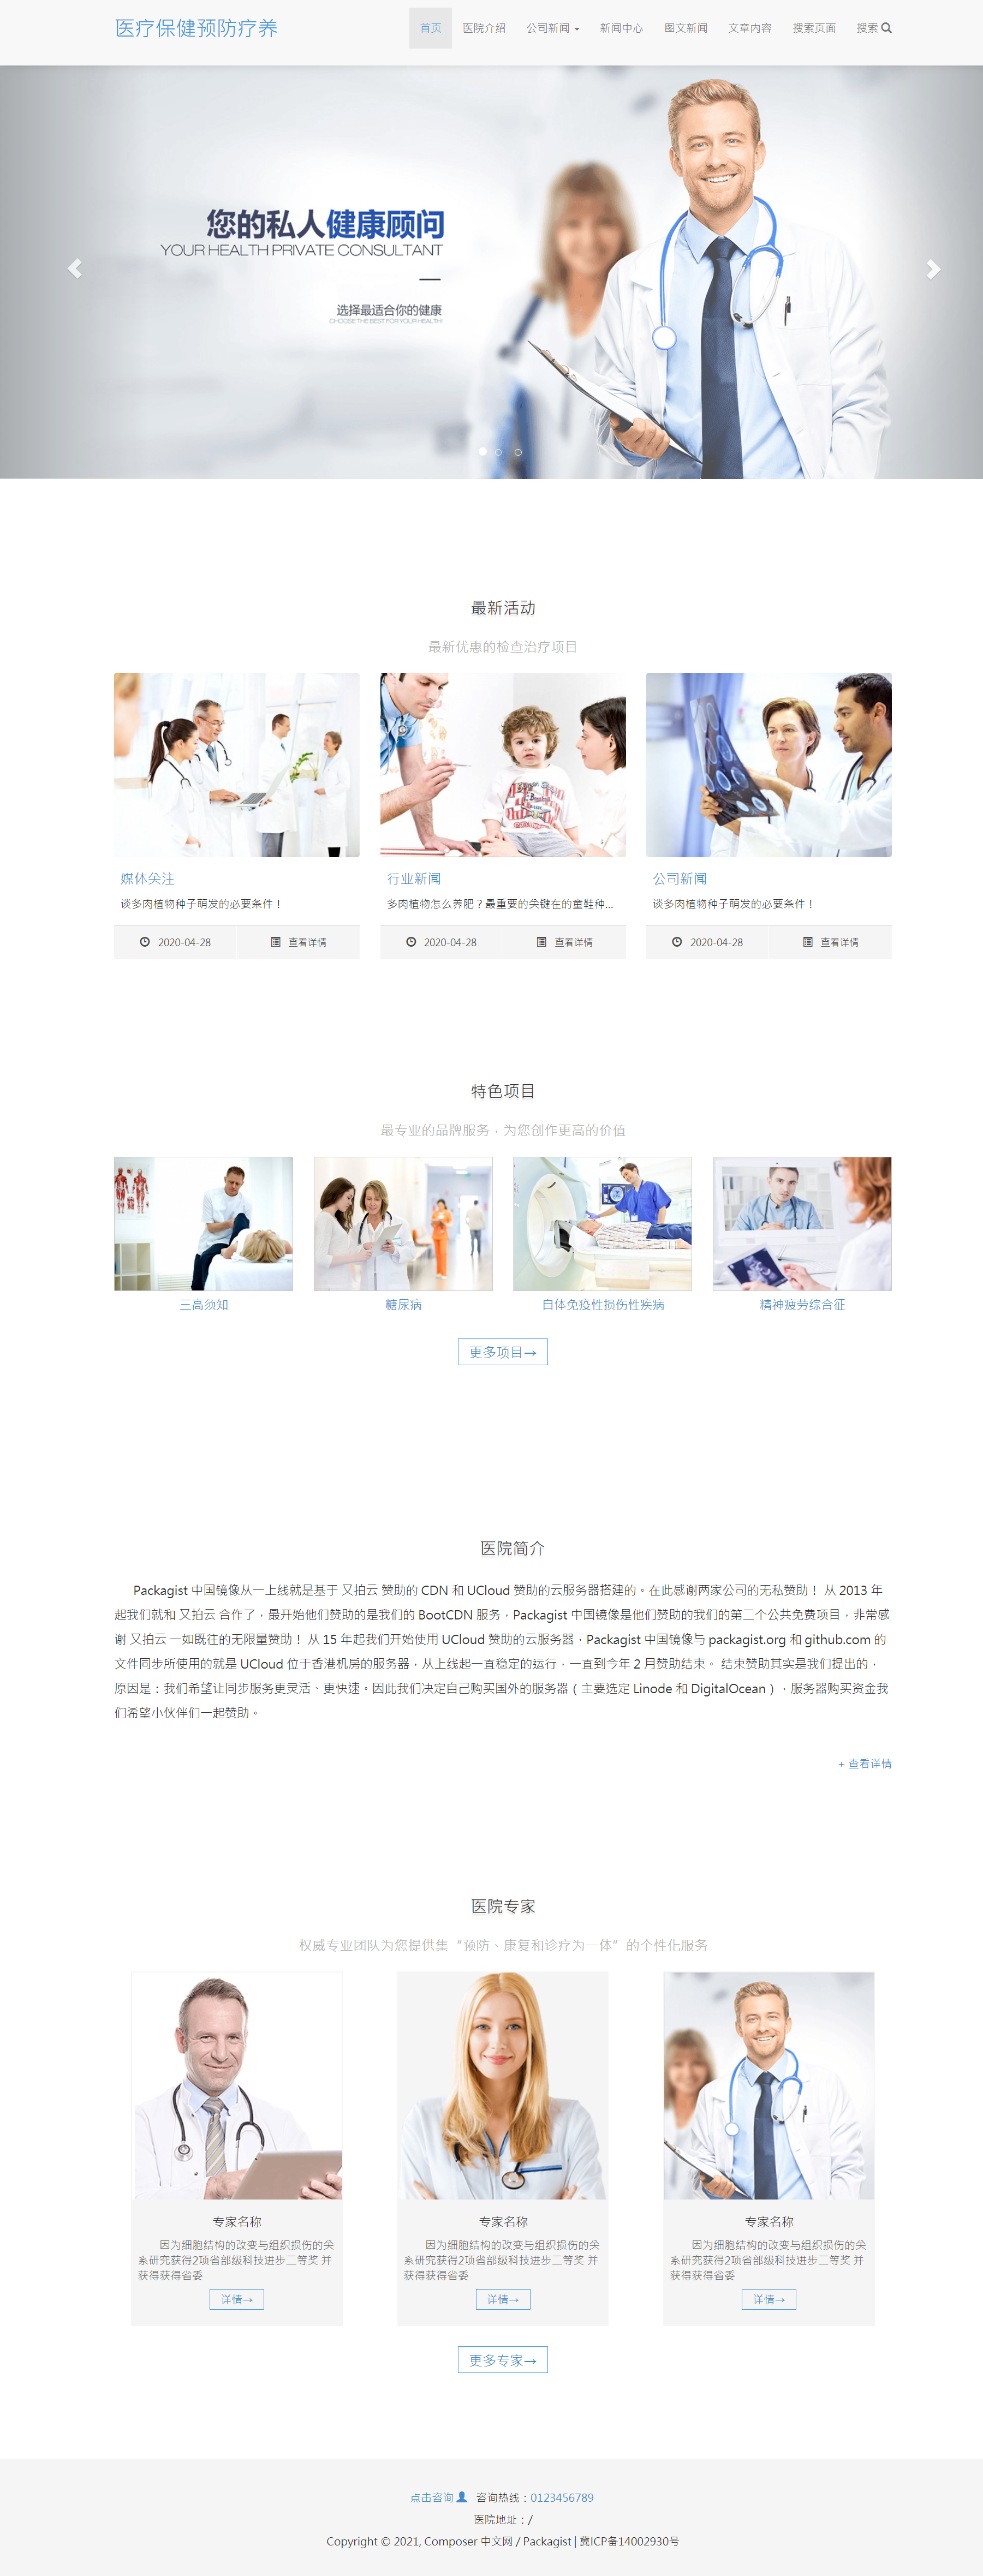 HTML蓝色欧美形式医疗保健公司企业网站模板代码